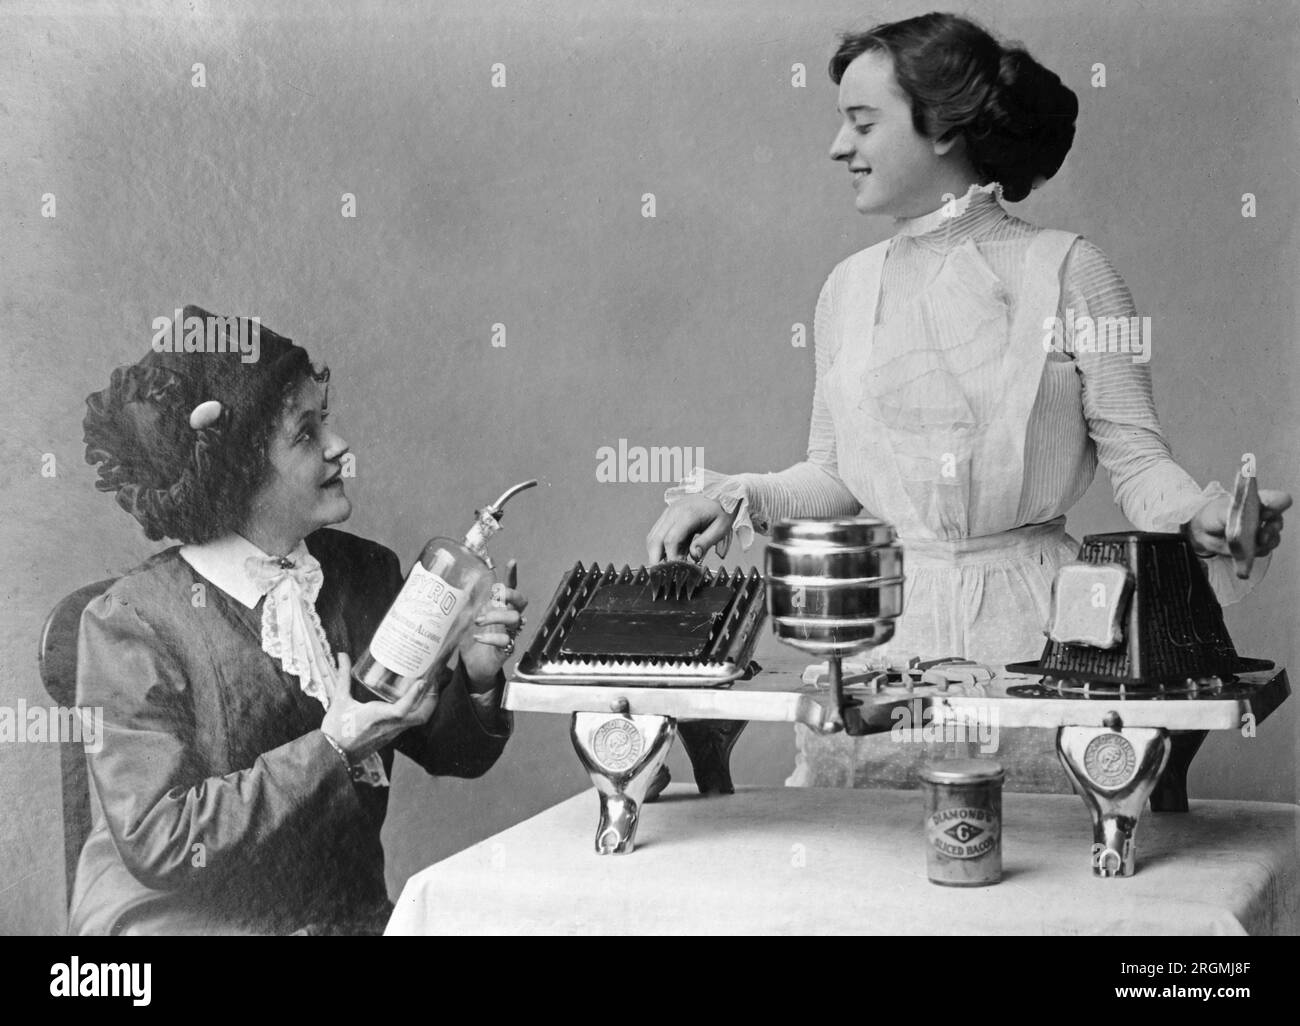 Das Foto zeigt eine sitzende Frau in einem Kleid und Hut, die eine Glasflasche mit einem Ausgießer mit der Aufschrift „Pyro“ denaturierter Alkohol hält. Eine andere Frau in einem Kleid und einer Schürze steht hinter einem Gerät mit 3 Kochplatten, das Toast und andere Speisen erhitzen kann. 1912-1930 Stockfoto